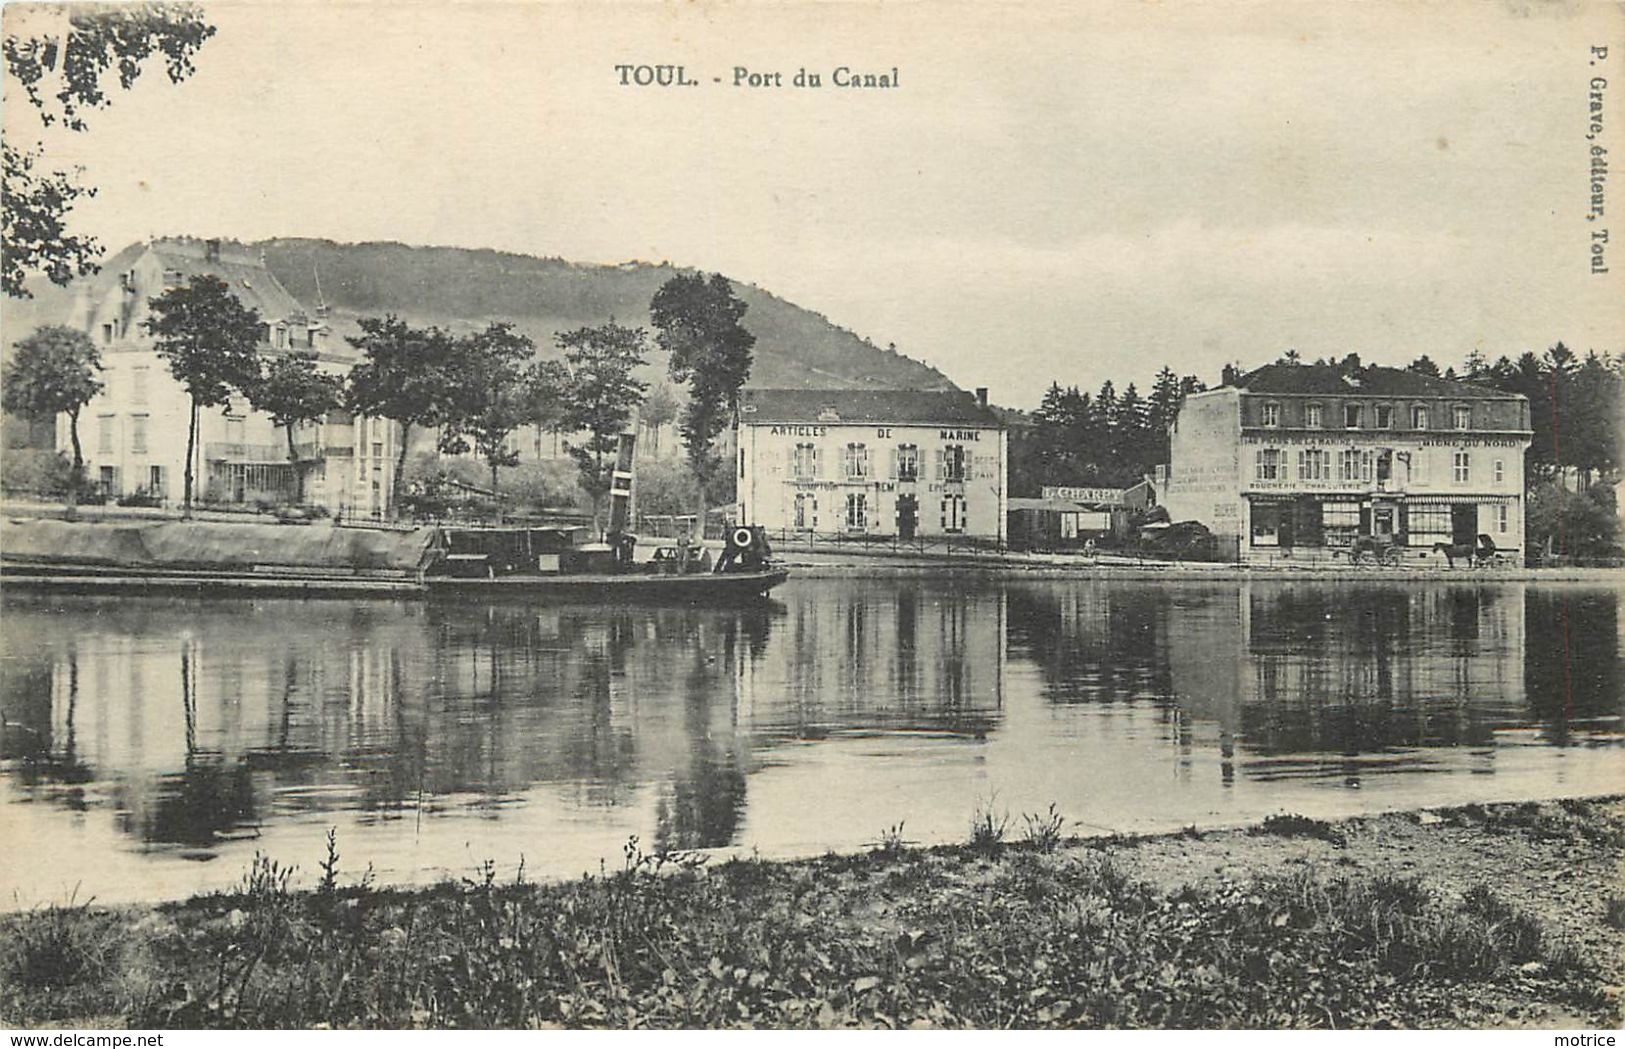 TOUL - Port Du Canal, Un Remorqueur. - Remorqueurs